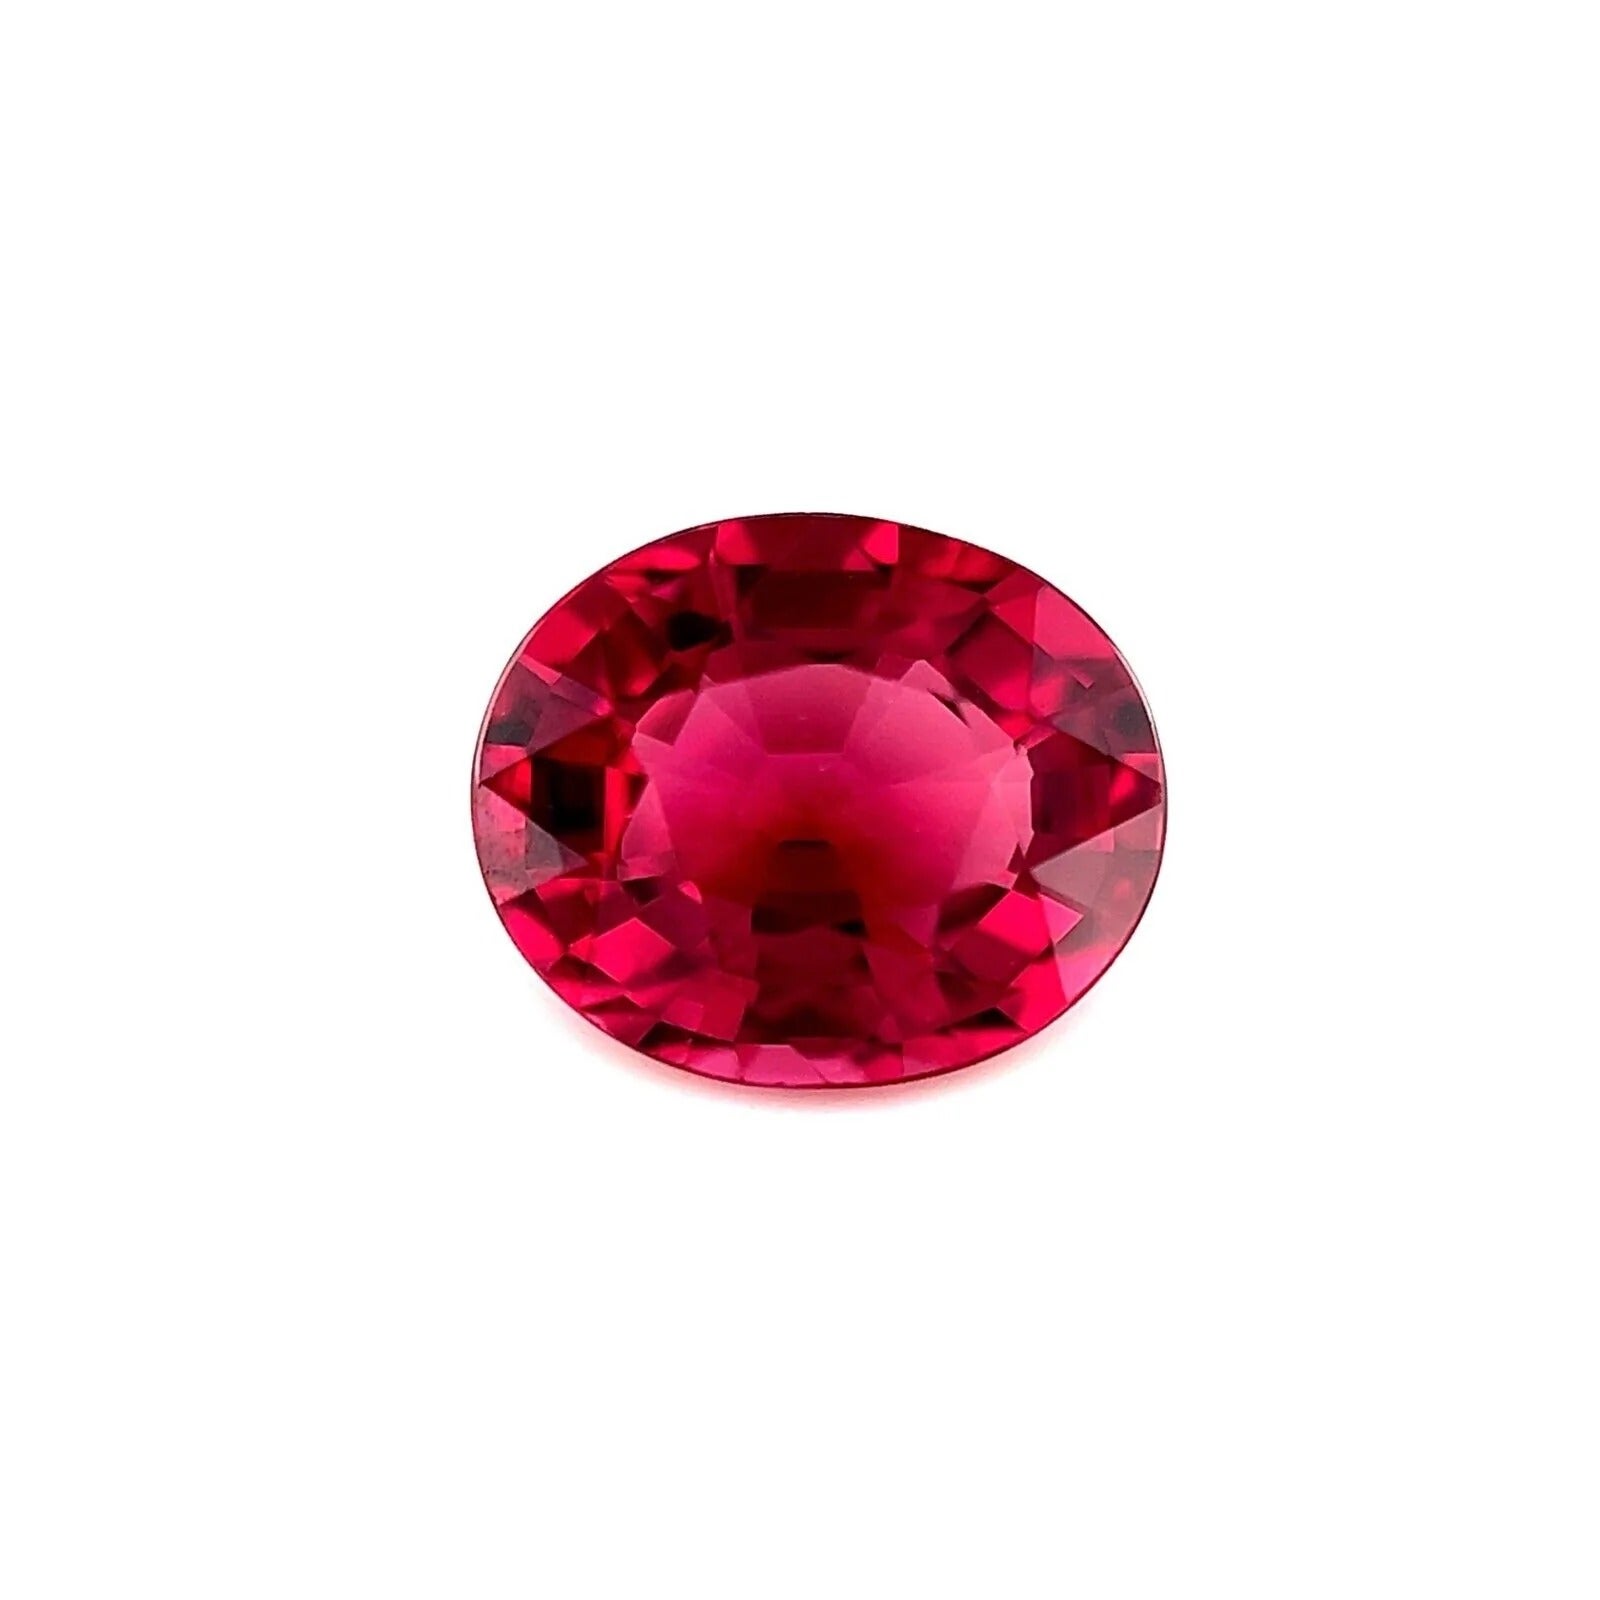 Grenat rhodolite rose vif et violet de 2,01 carats, taille ovale 8,2 x 6,6,6 mm, pierre précieuse non sertie IF en vente